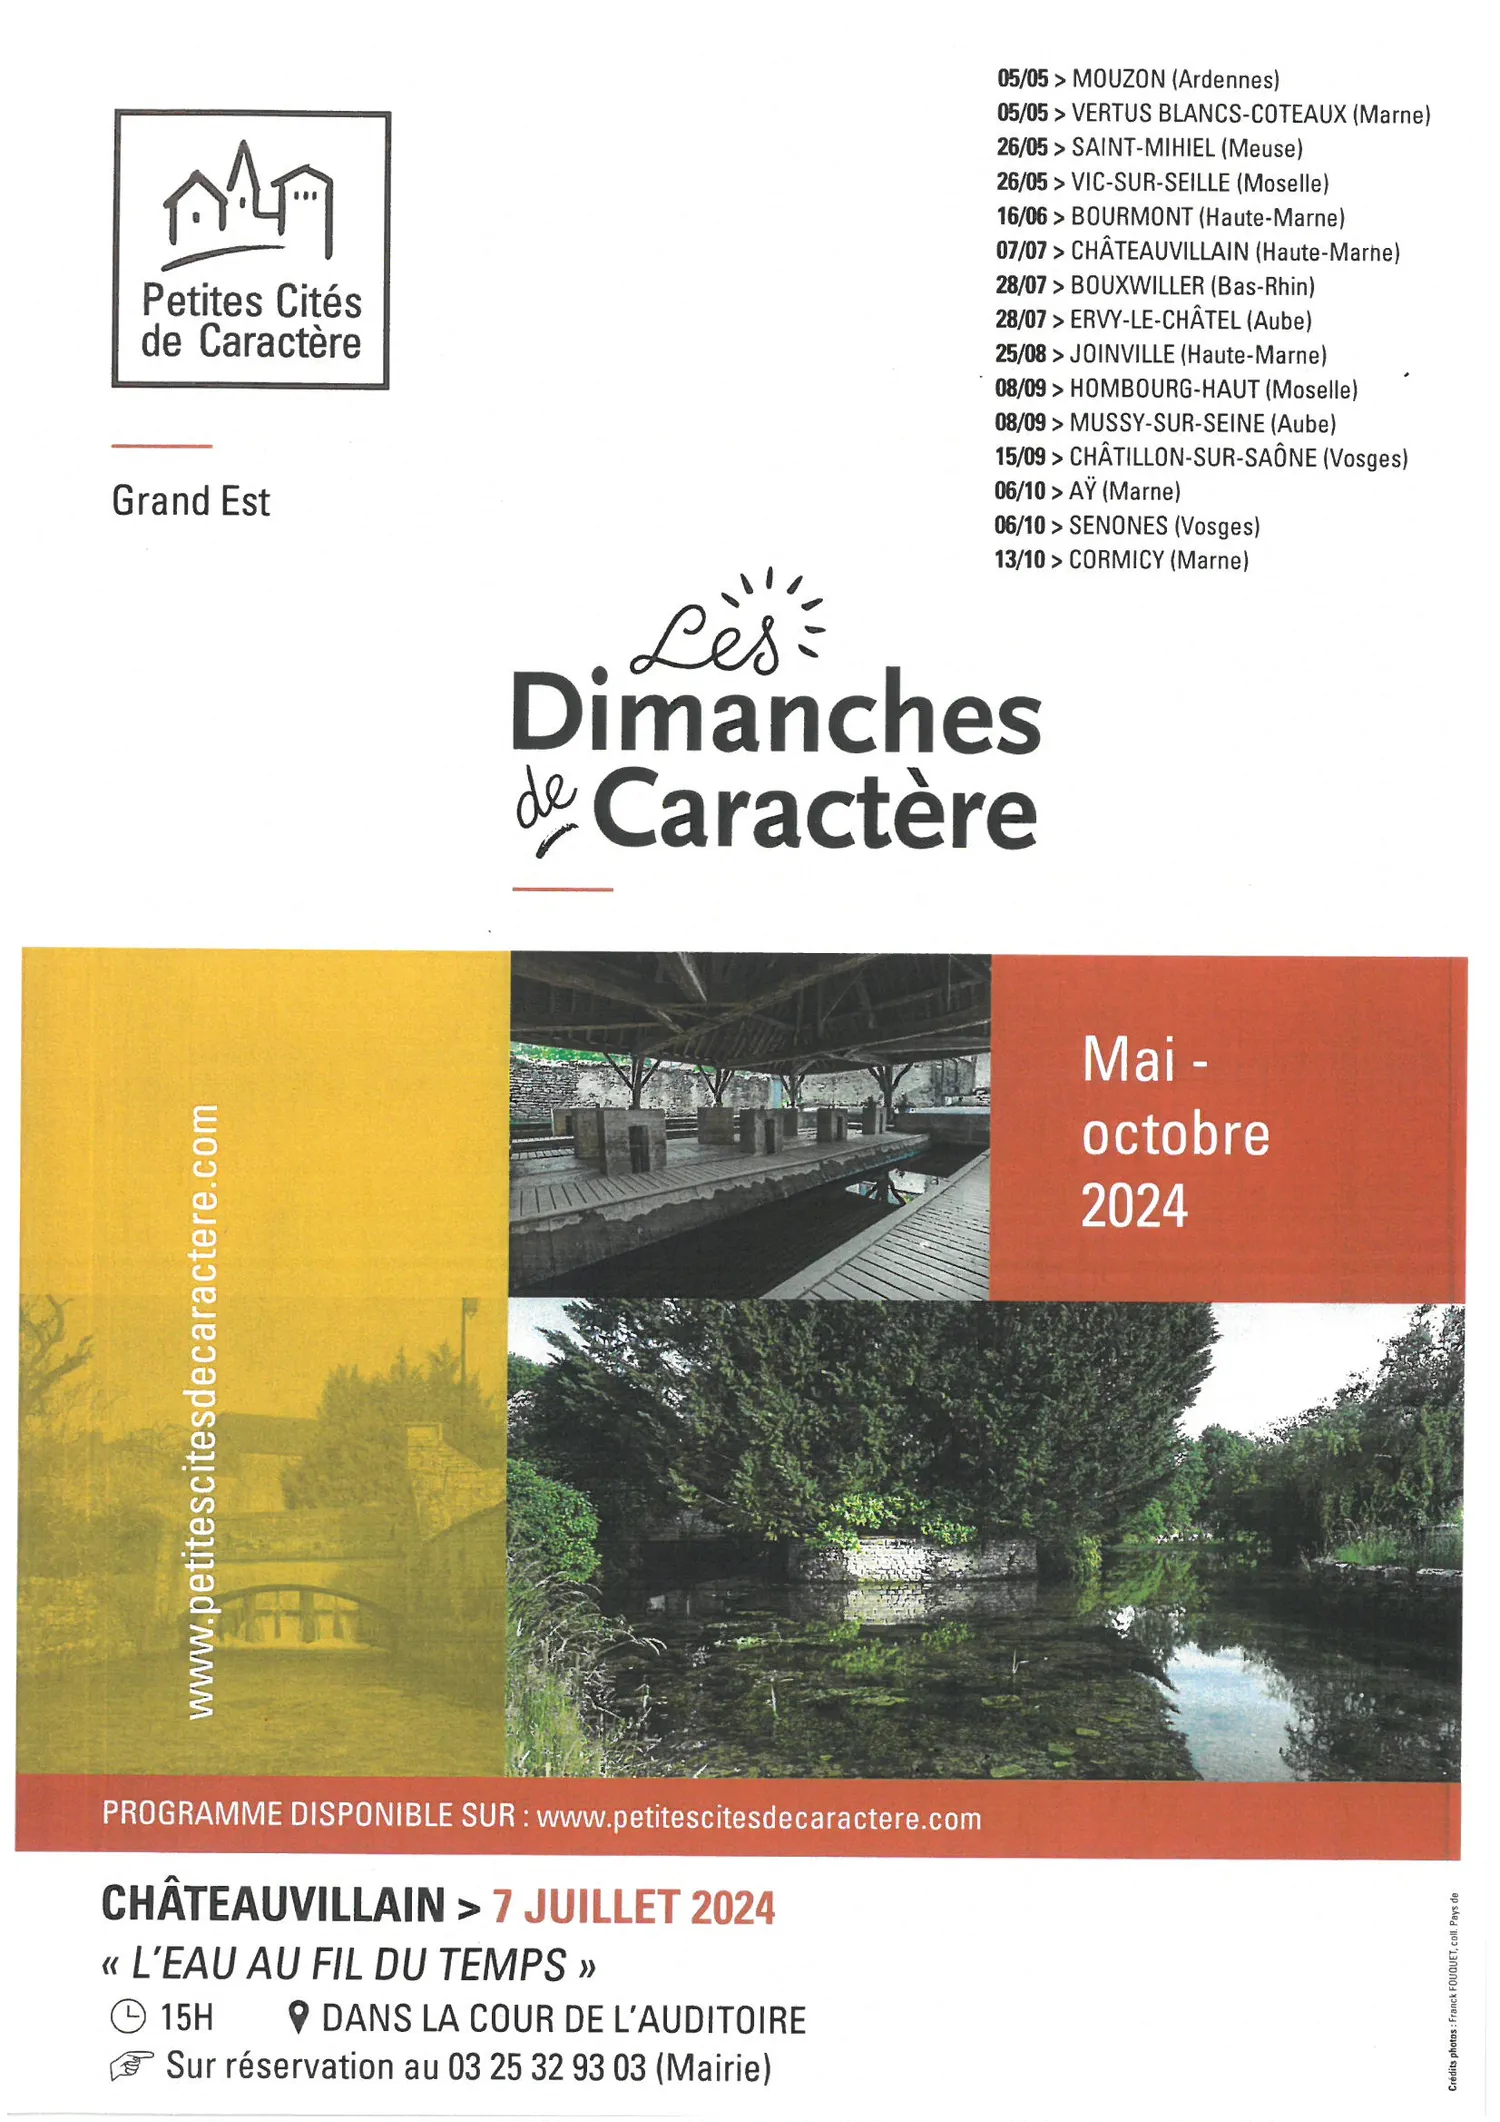 Image qui illustre: Dimanche De Caractere à Châteauvillain - 0